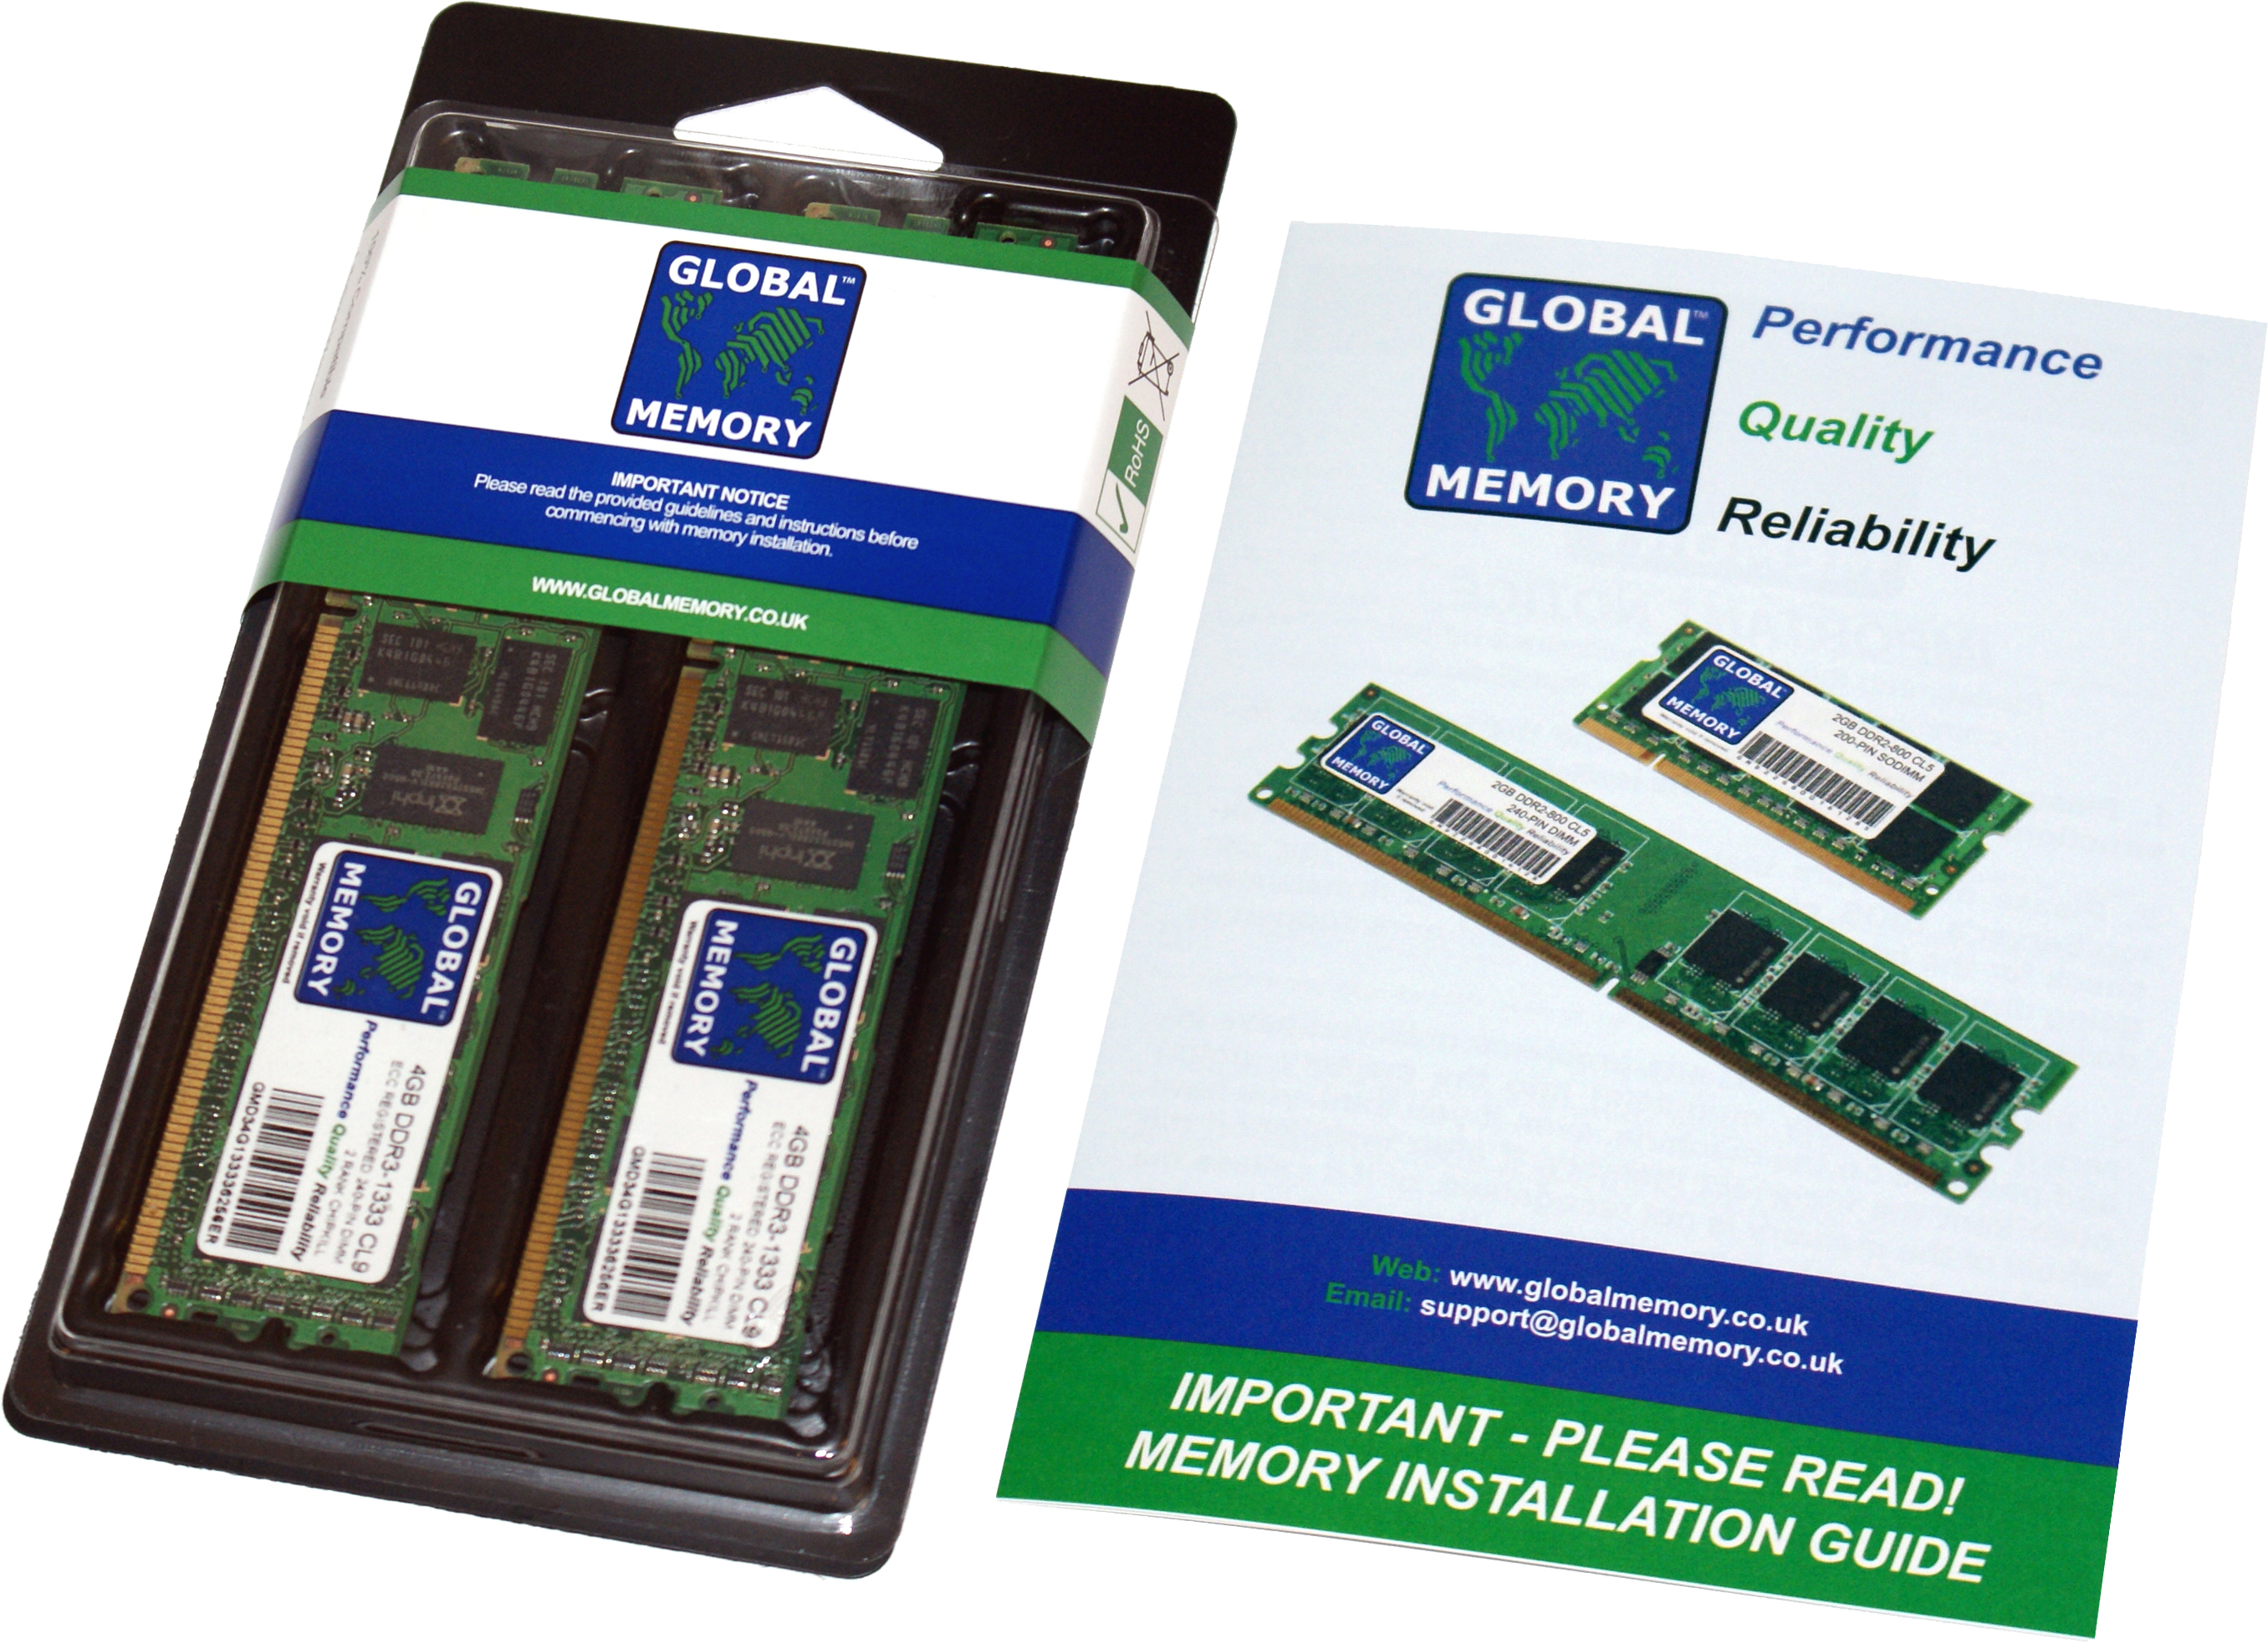 128GB (2 x 64GB) DDR4 2666MHz PC4-21300 288-PIN LOAD REDUCED ECC REGISTERED DIMM (LRDIMM) MEMORY RAM KIT FOR SUN SERVERS/WORKSTATIONS (8 RANK KIT CHIPKILL)